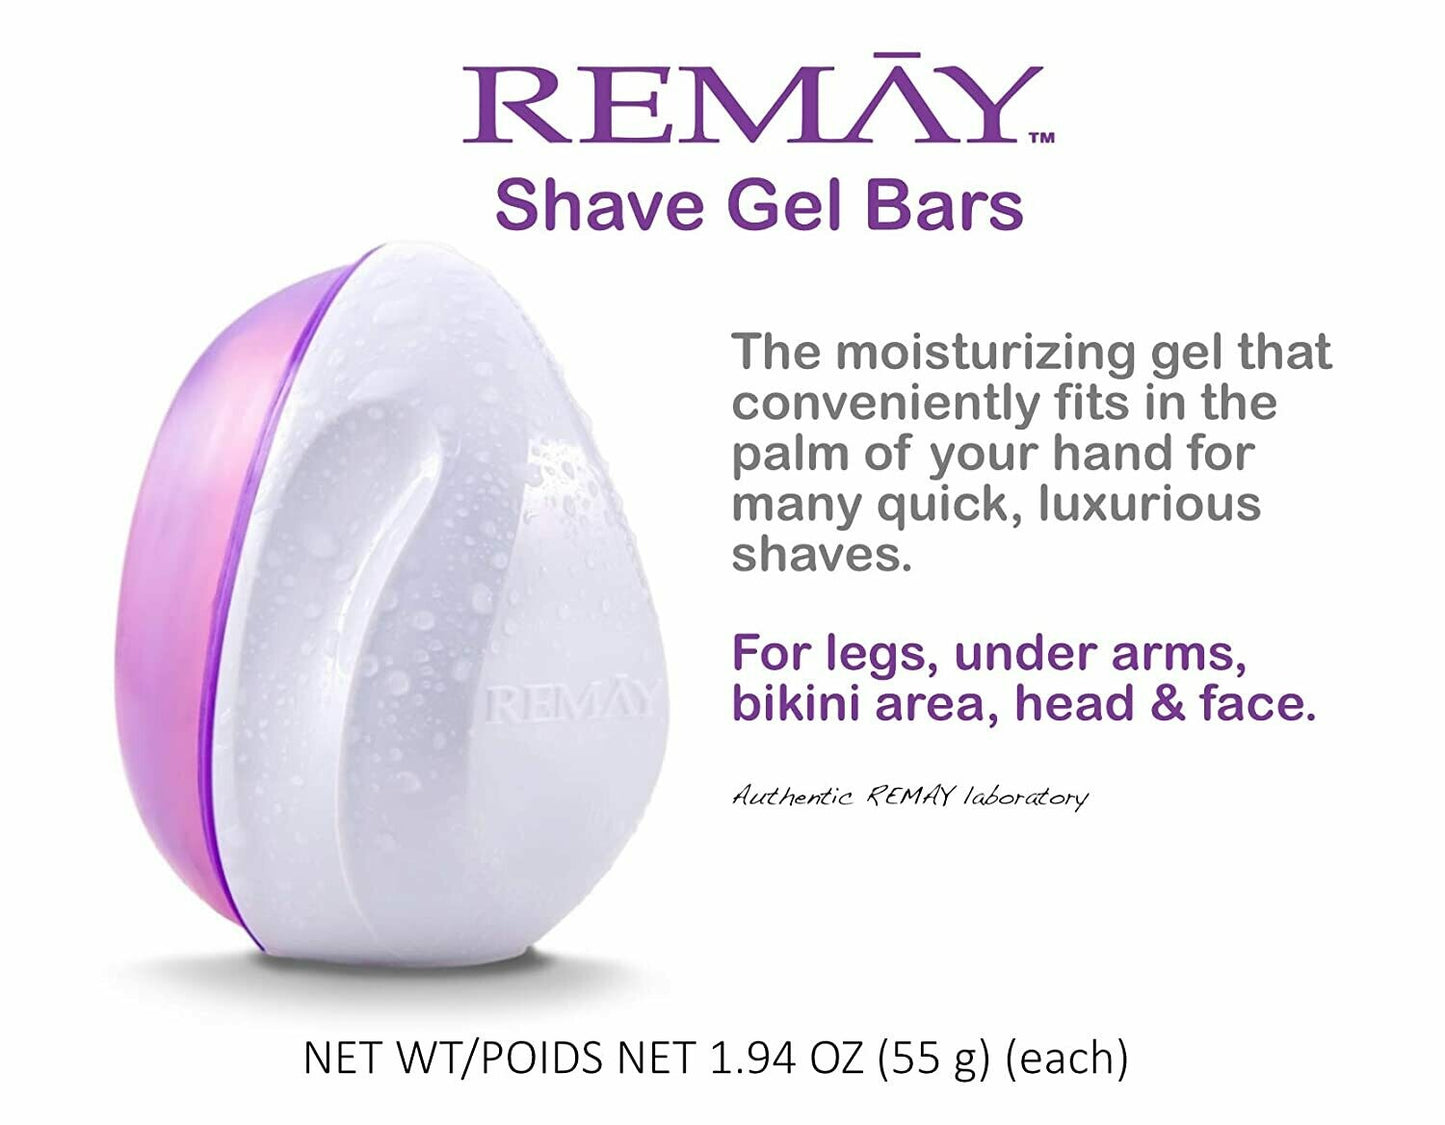 REMAY Glide Shave | Shave Gel Bar (6 PACK)